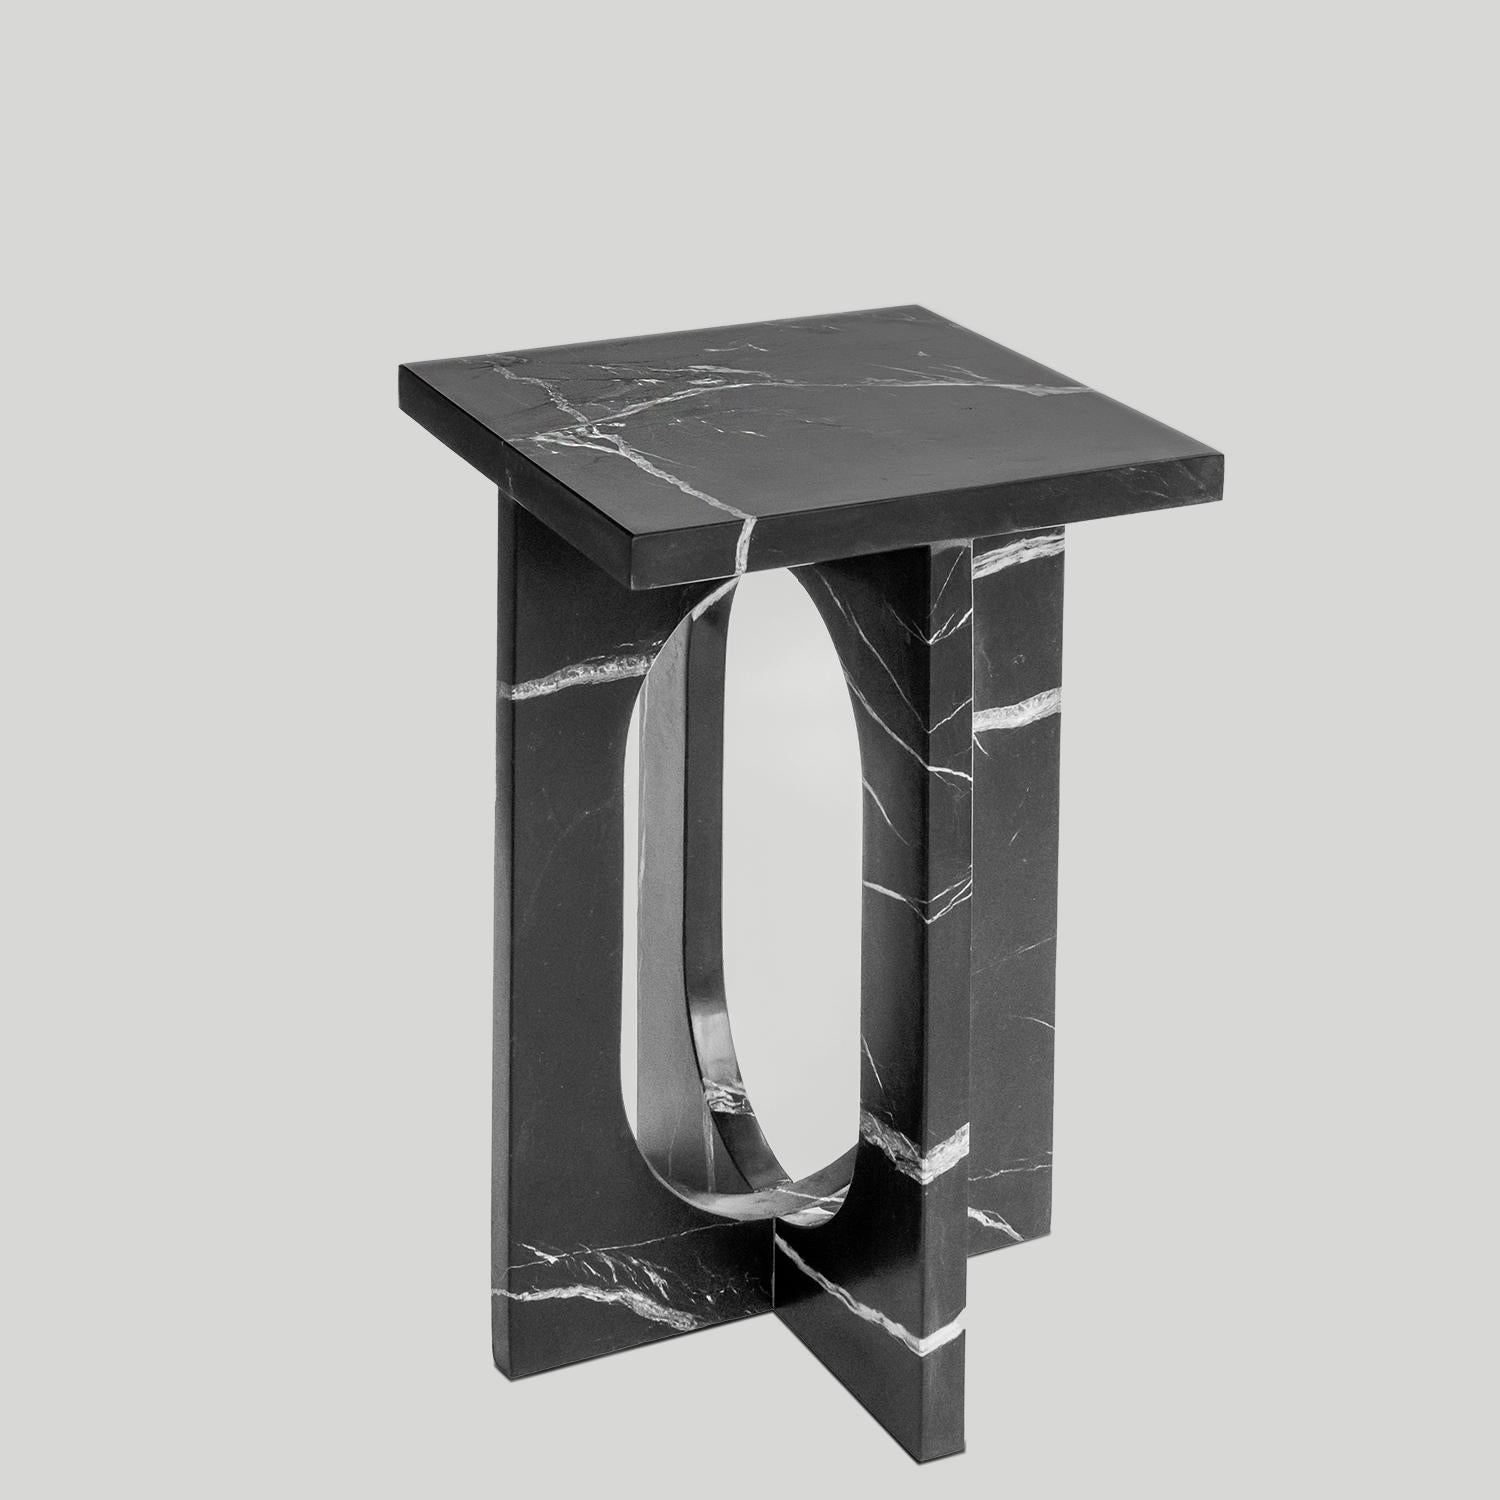 Table d'appoint BOND en marbre noir -  La table d'appoint Bond évoque la simplicité avec son design moderne et épuré. Fabriquée en marbre noir adouci, cette pièce constitue un ajout élégant à tout espace grâce à ses lignes sophistiquées et épurées